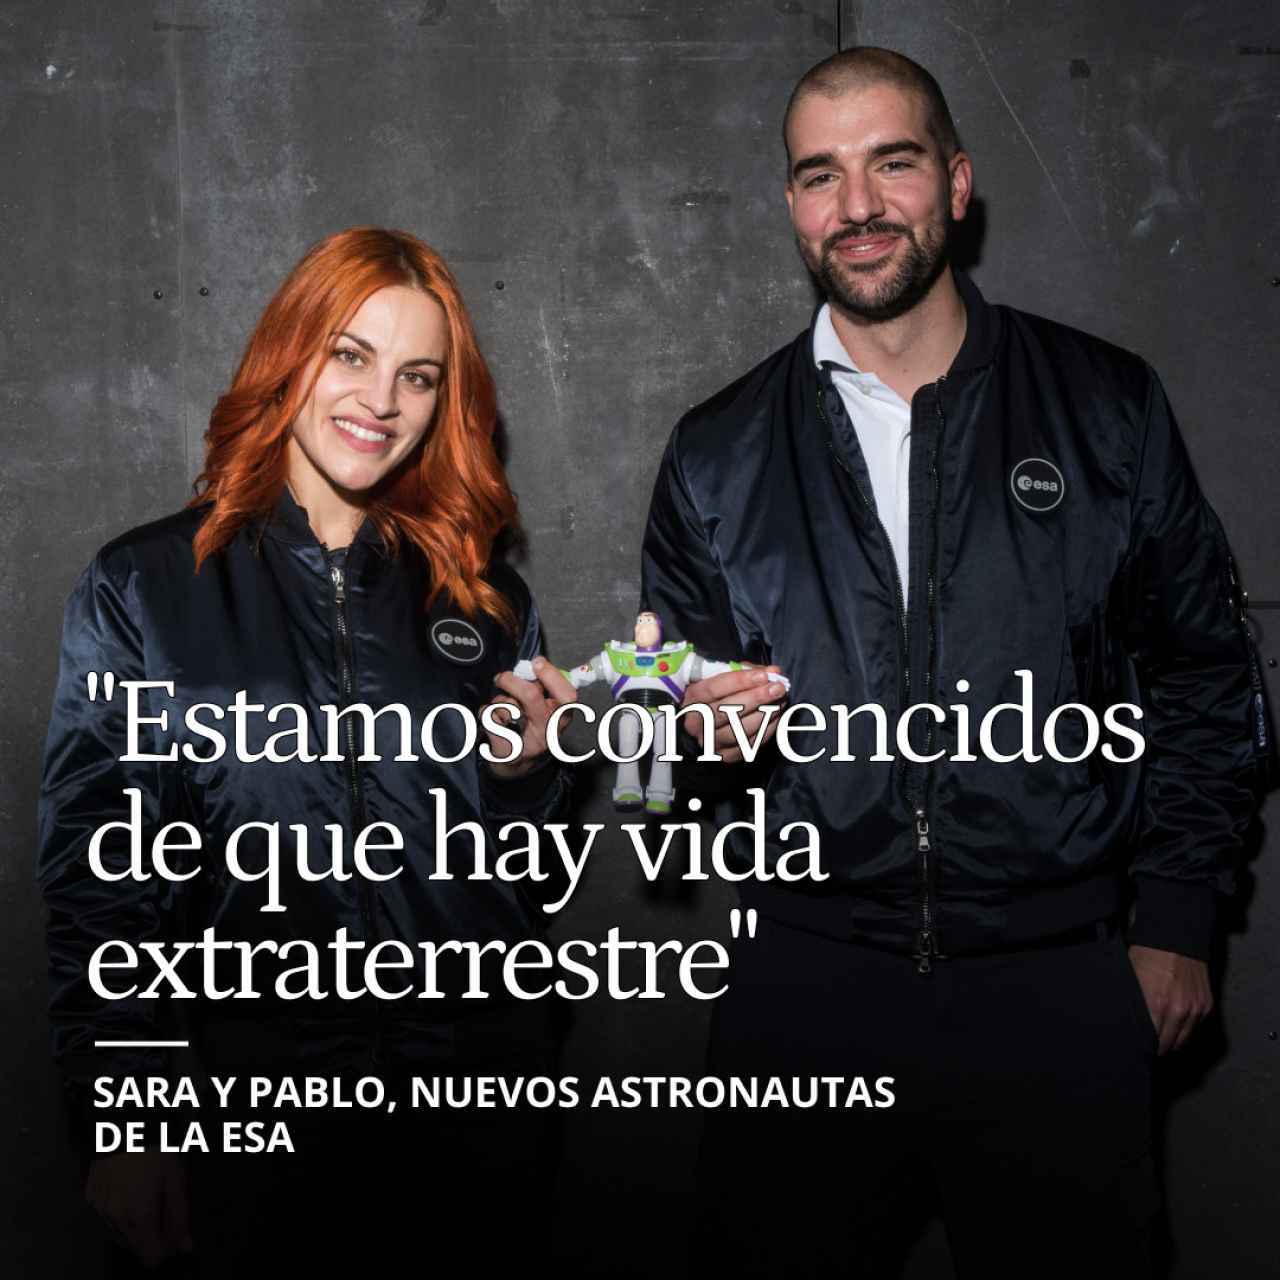 Sara García y Pablo Álvarez, astronautas de la ESA: "Estamos convencidos de que hay vida extraterrestre"